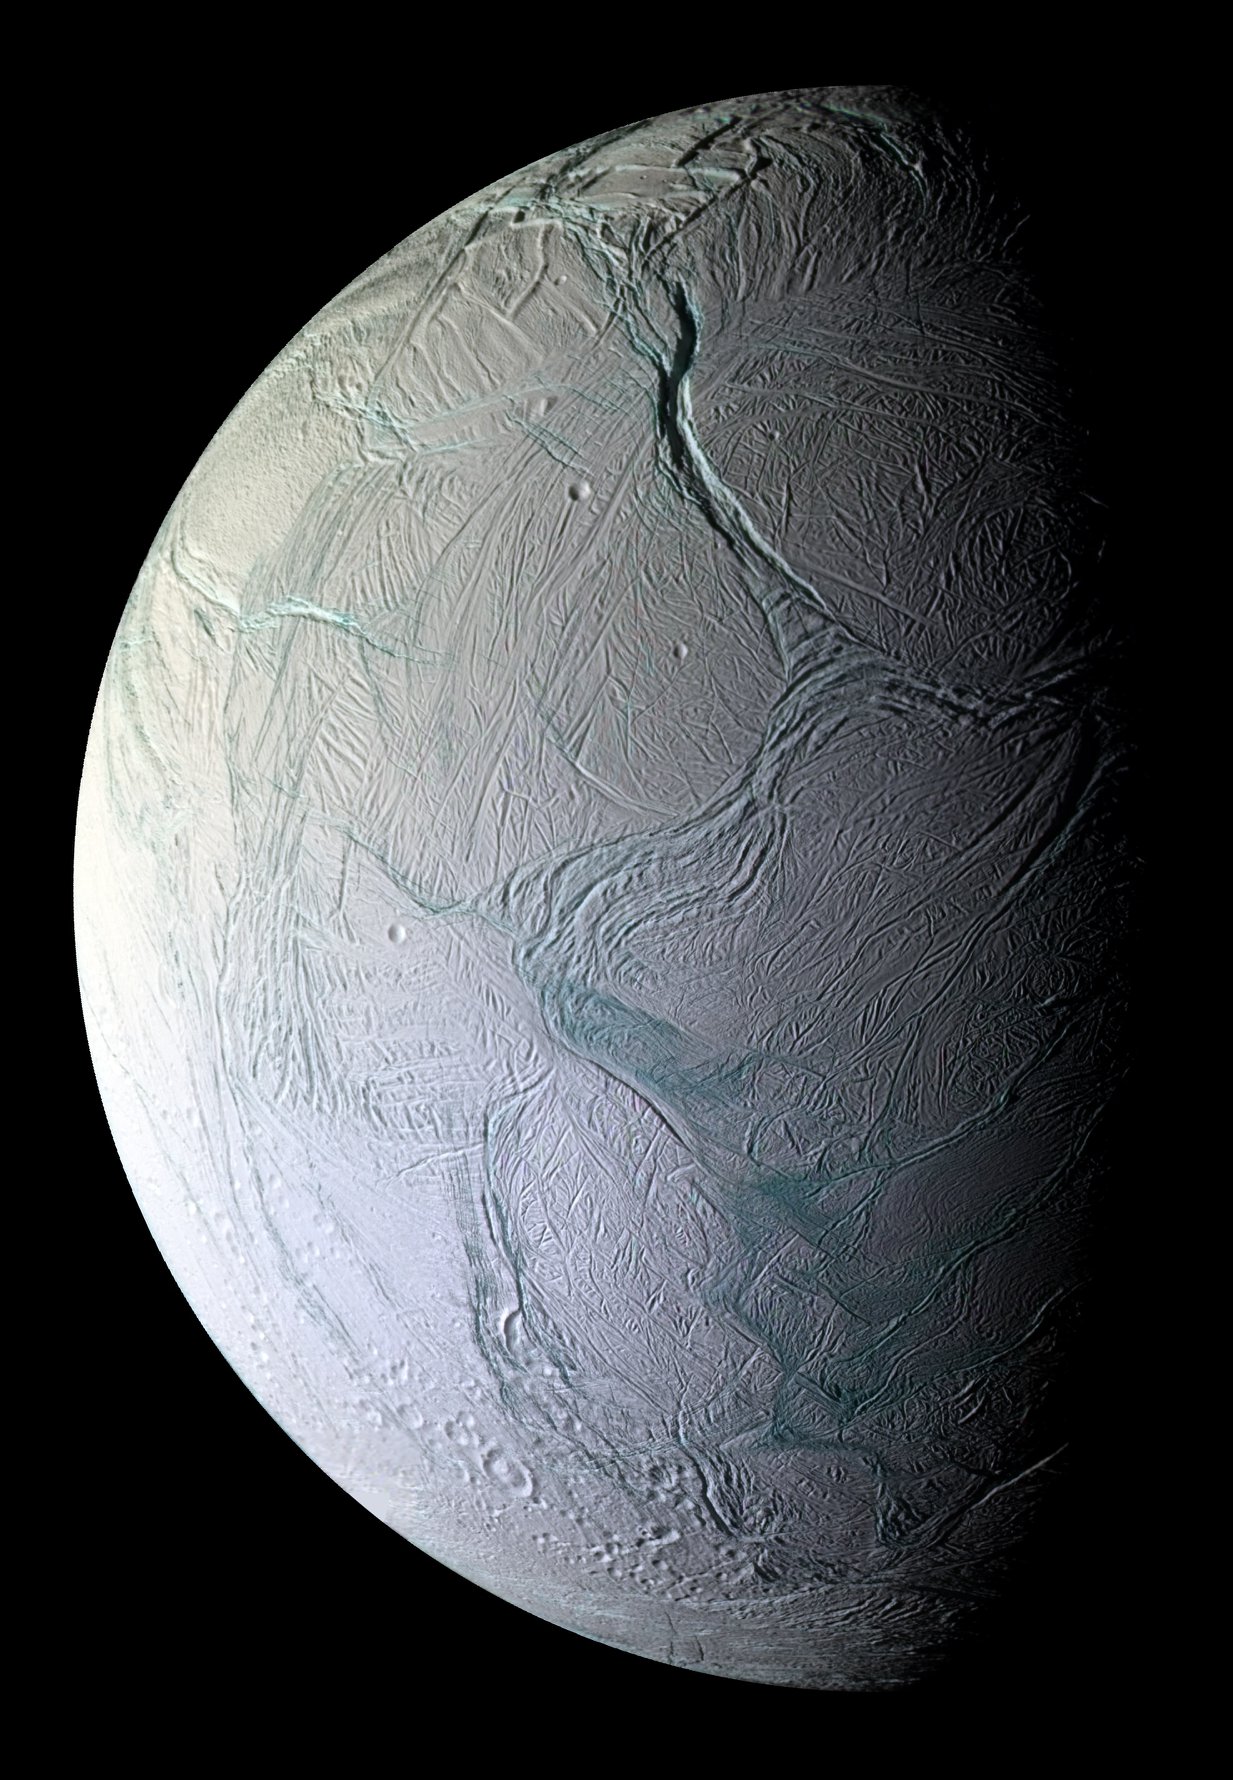 Bolygós rövidhírek: tengeráramlásokat feltételeznek az Enceladuson